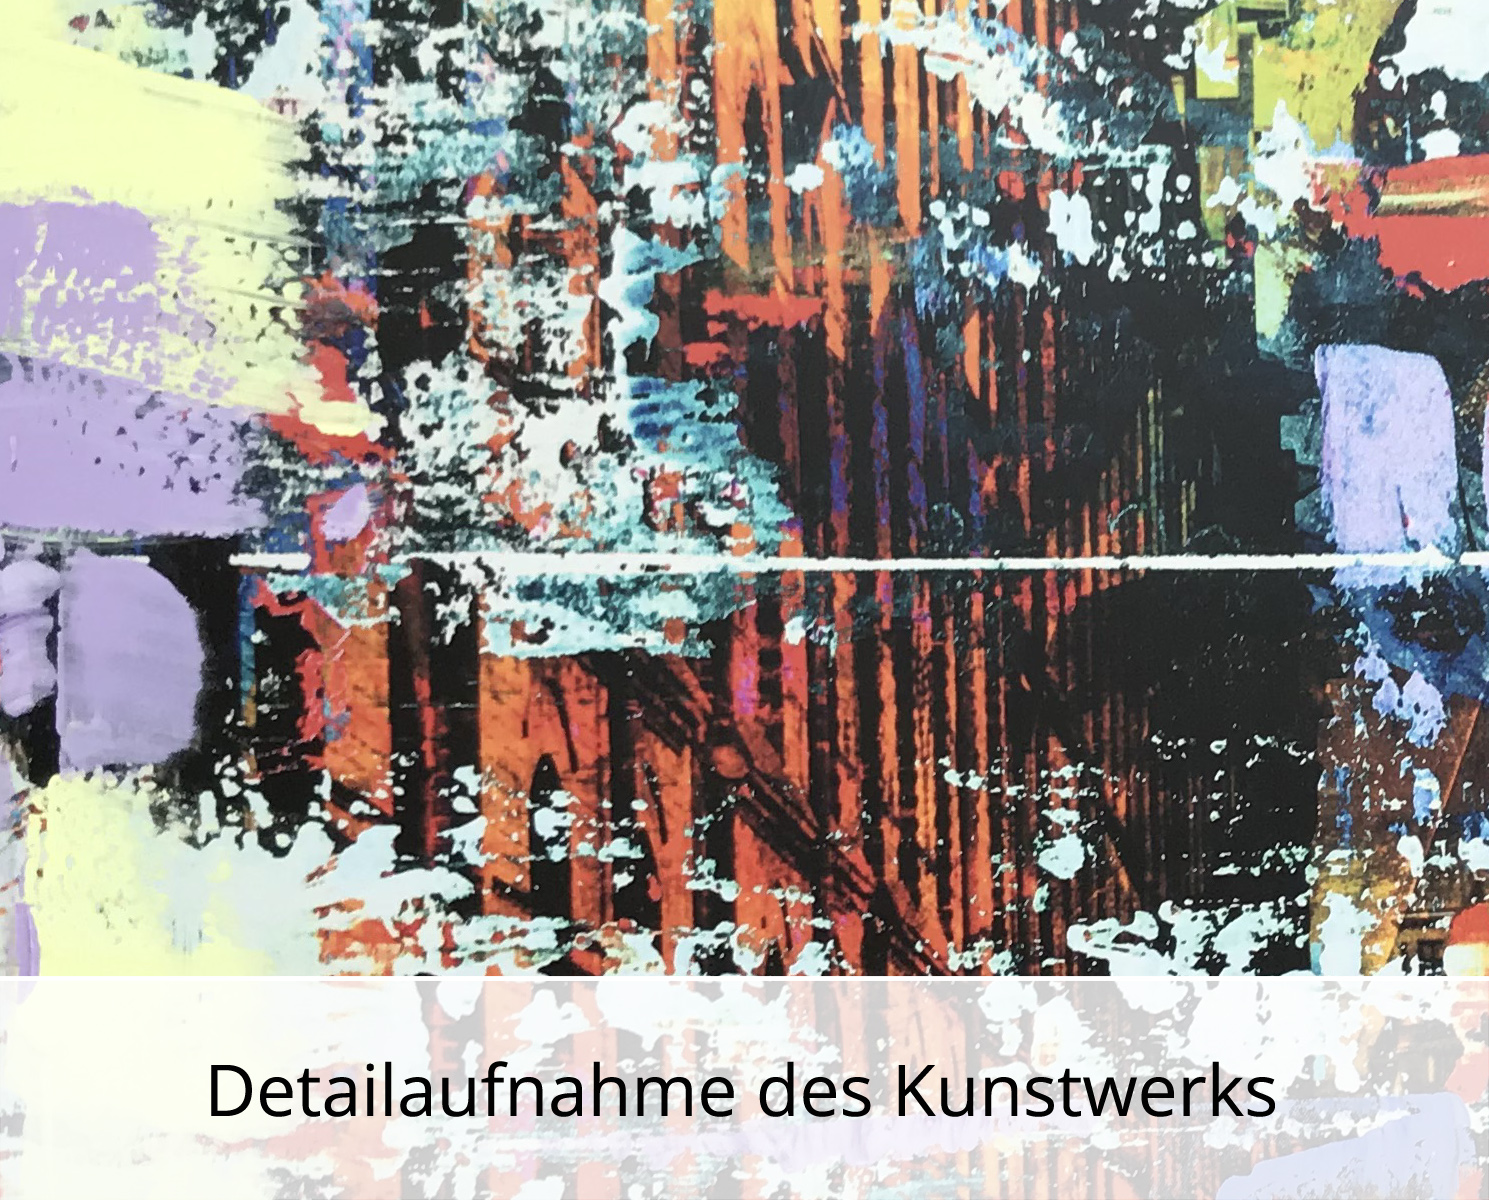 H. Mühlbauer-Gardemin: "Speicherstadt Hamburg", Moderne Pop Art, Original/serielles Unikat